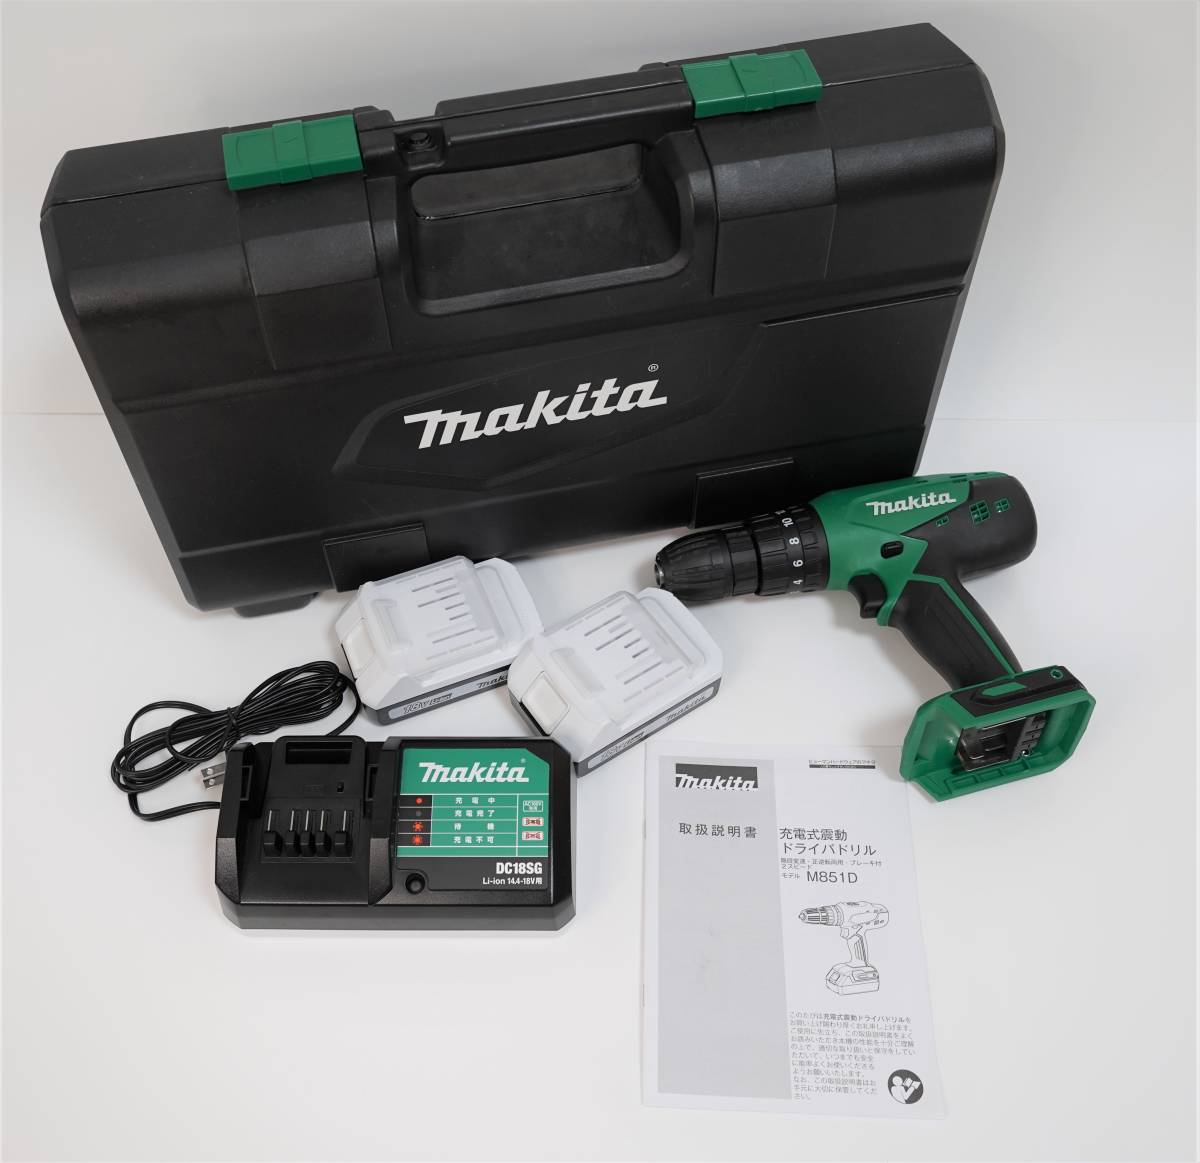 マキタ makita 充電式震動ドライバドリル HP460D バッテリー2個付き 